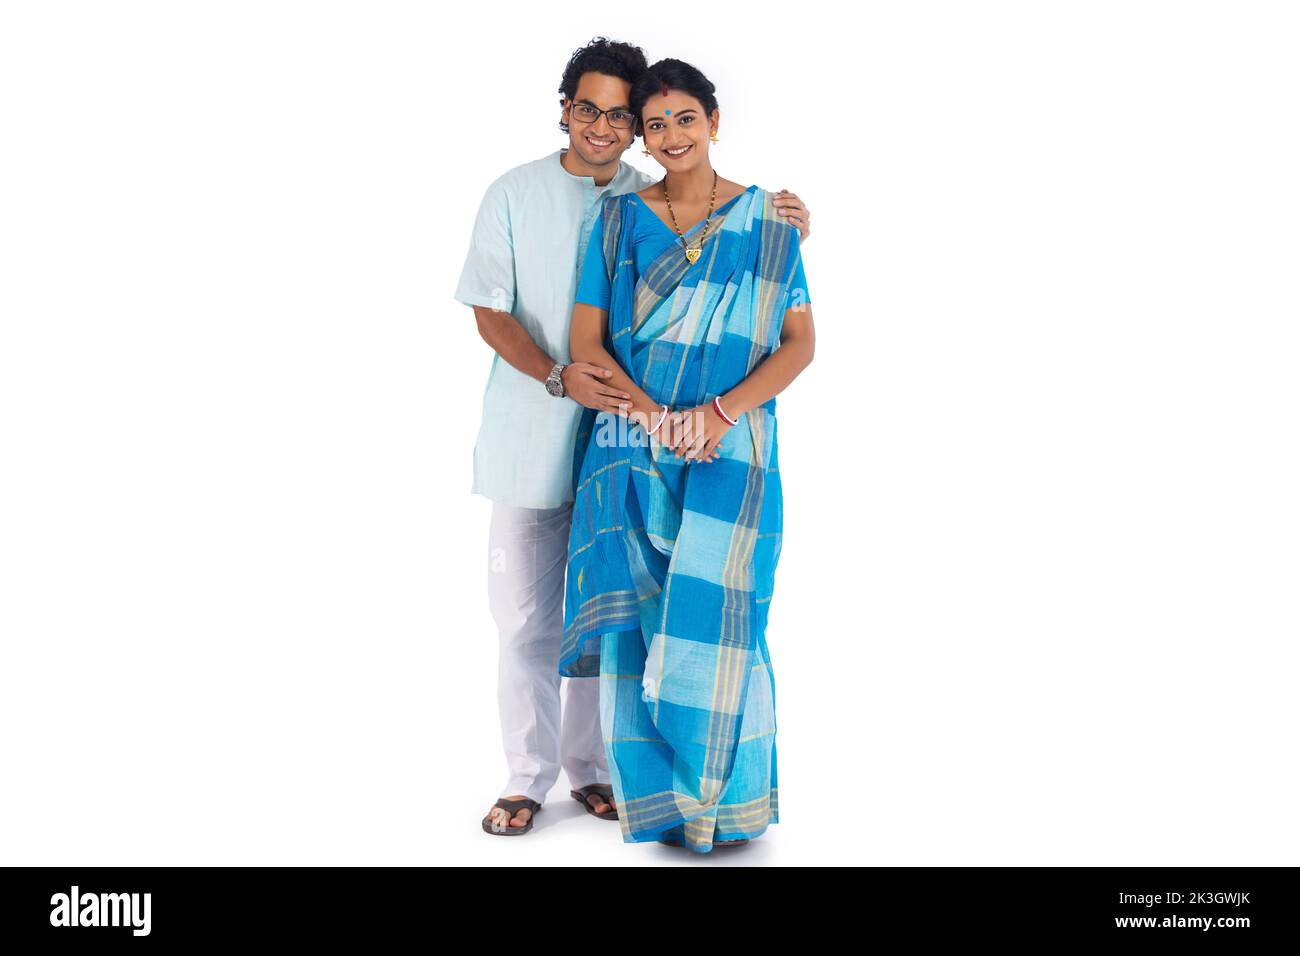 Porträt eines jungen bengalischen Paares, das vor weißem Hintergrund steht Stockfoto